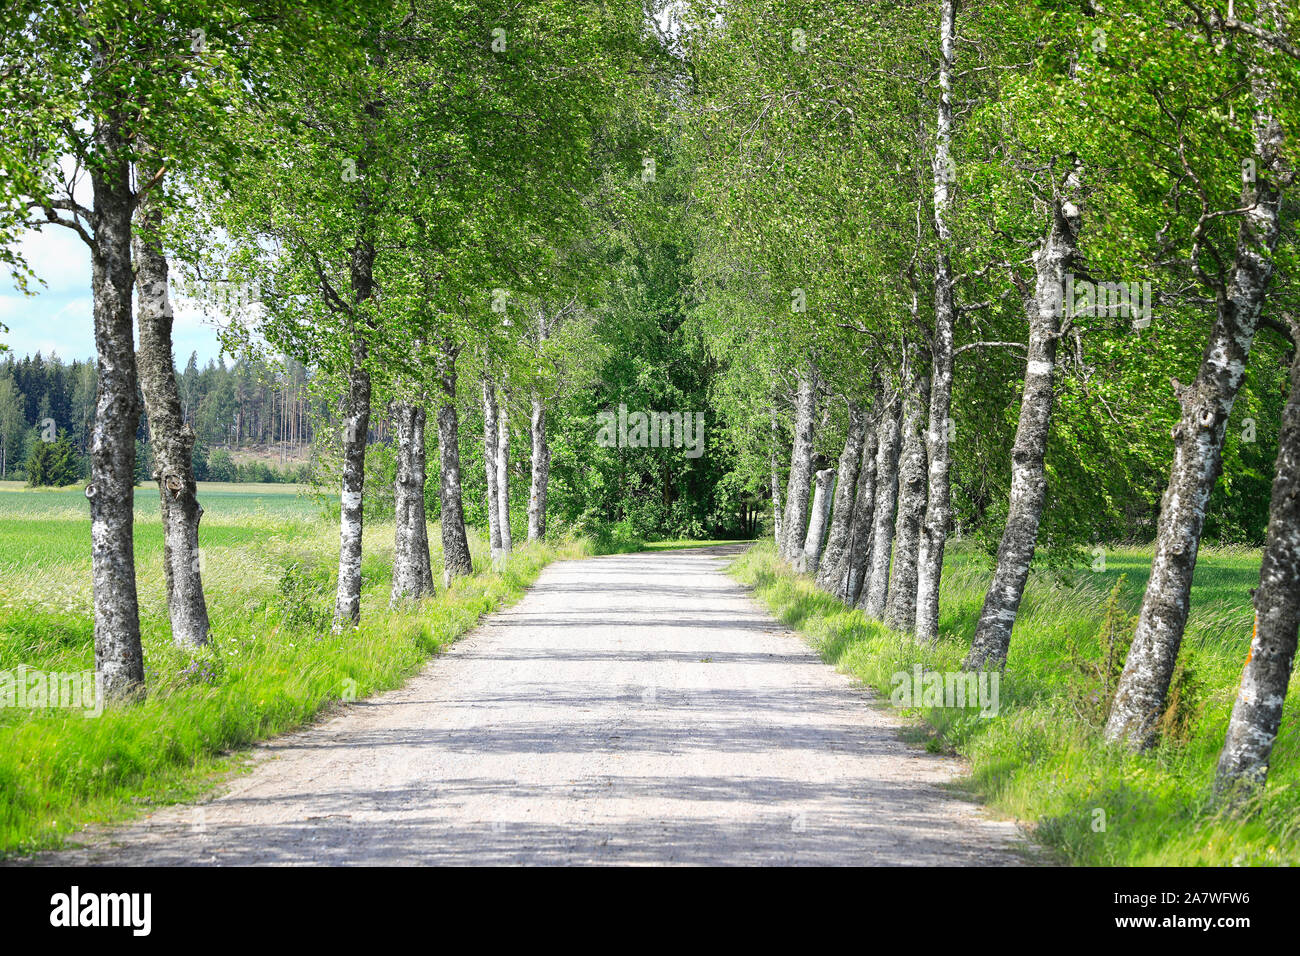 Petit chemin rural bordé de bouleaux verts sur Midsummer Eve 2019. Salo, Finlande. Juin 2019. Banque D'Images